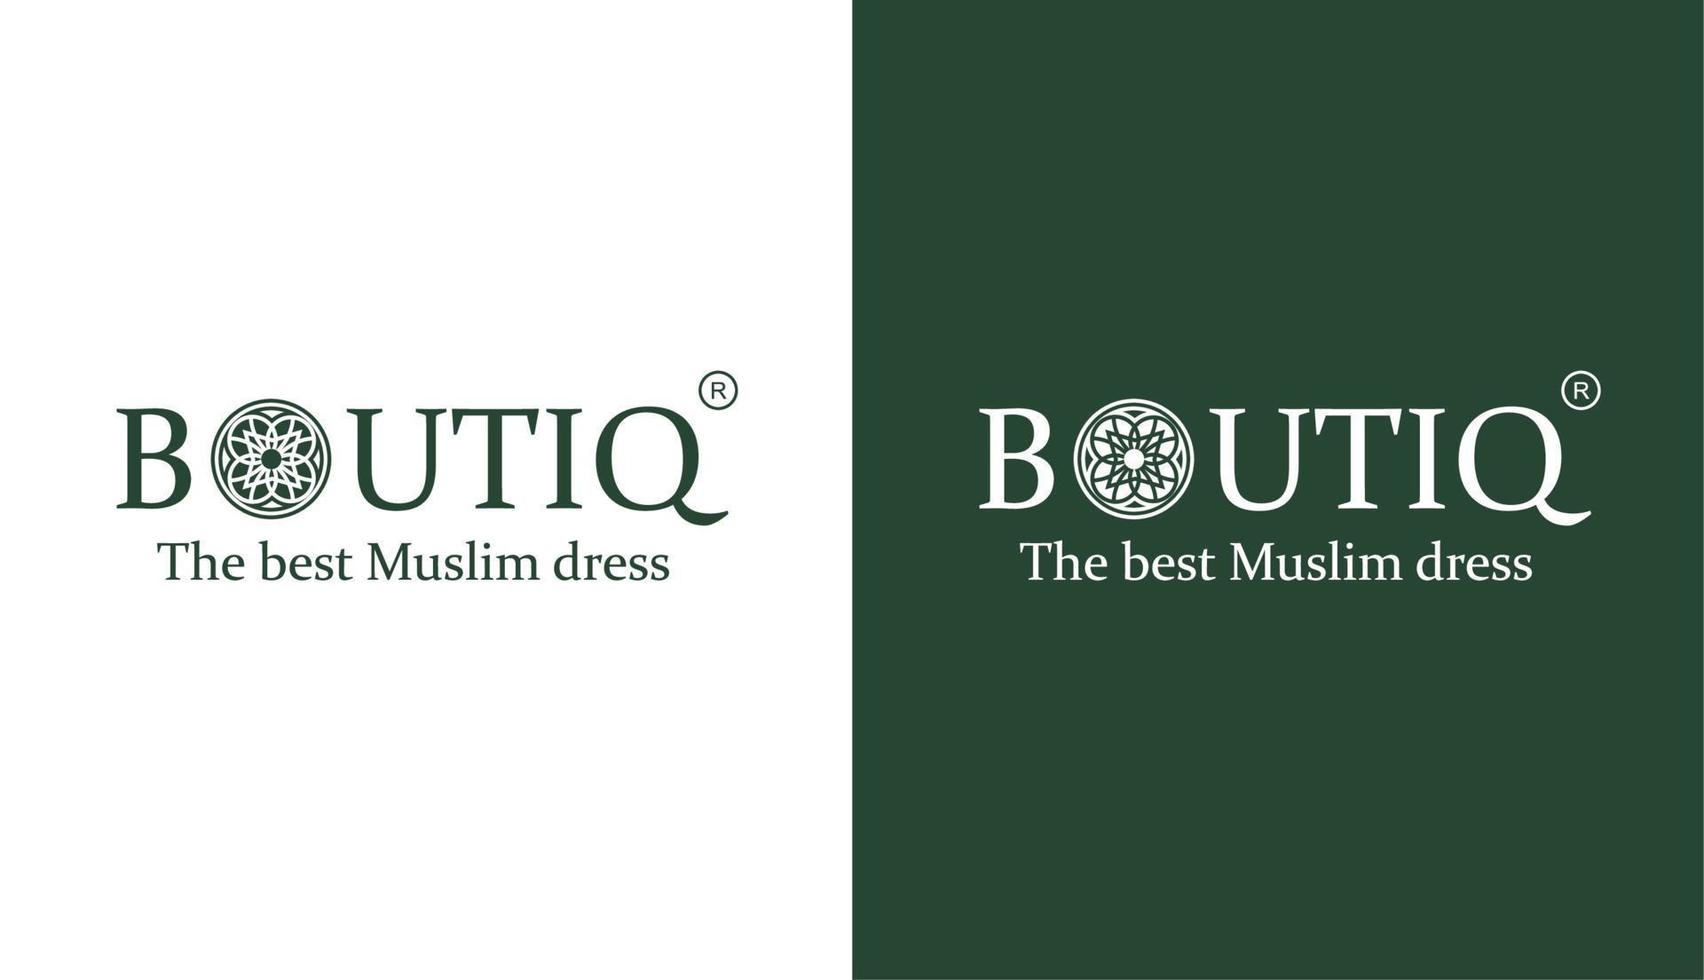 luxe boutiq-logo met mandala-elementen, ontwerpinspiratievectorsjabloon voor mode- en kledingmerk vector